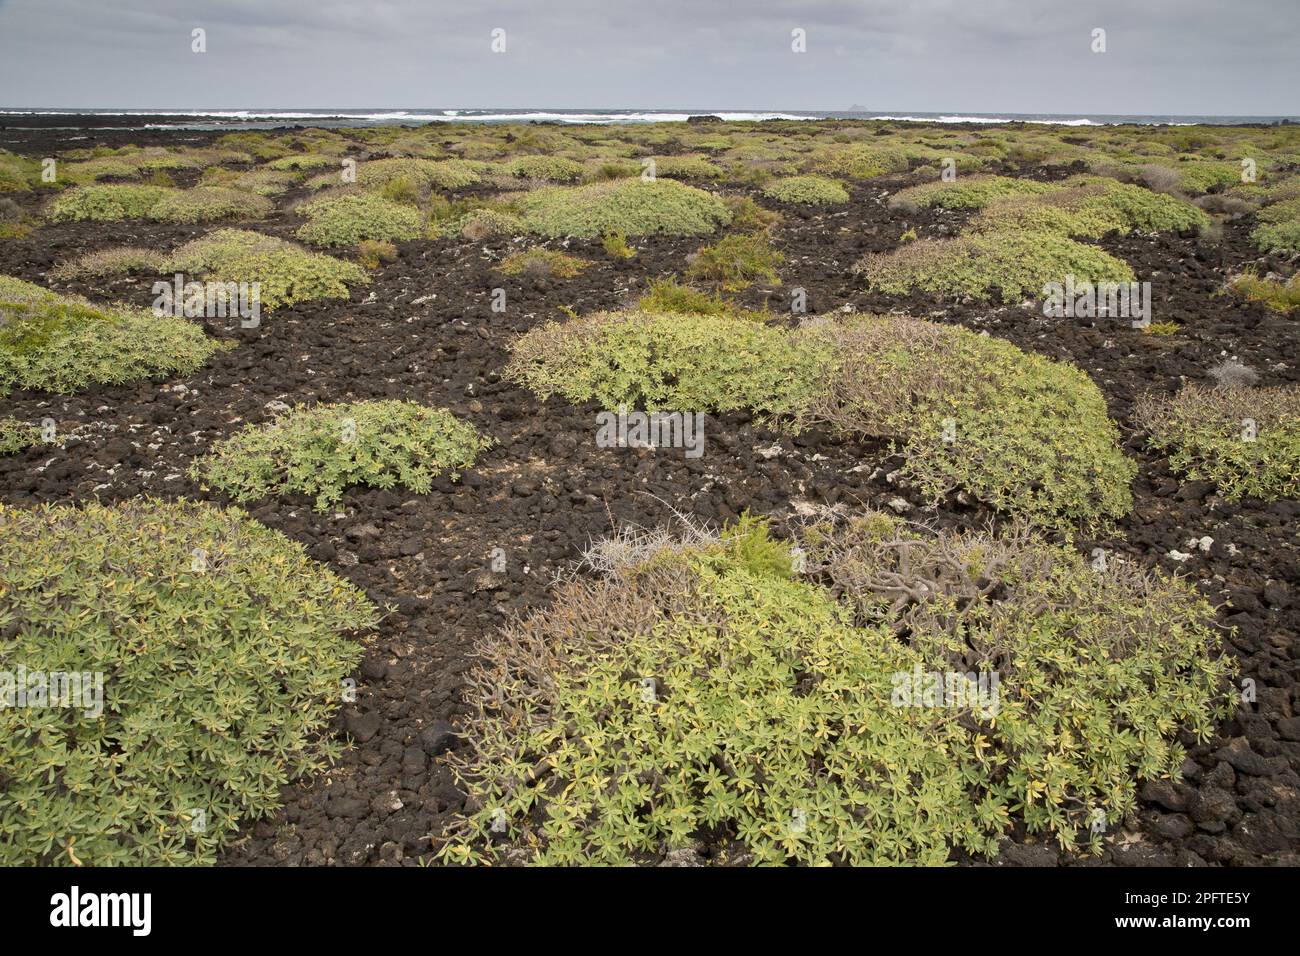 Angewohnheit des Balsam-Spurfens (Euphorbia balsamifera), der den jüngsten Lavafluss an der Küste, Malpais de la Corona, Lanzarote, Kanarische Inseln besiedelt Stockfoto